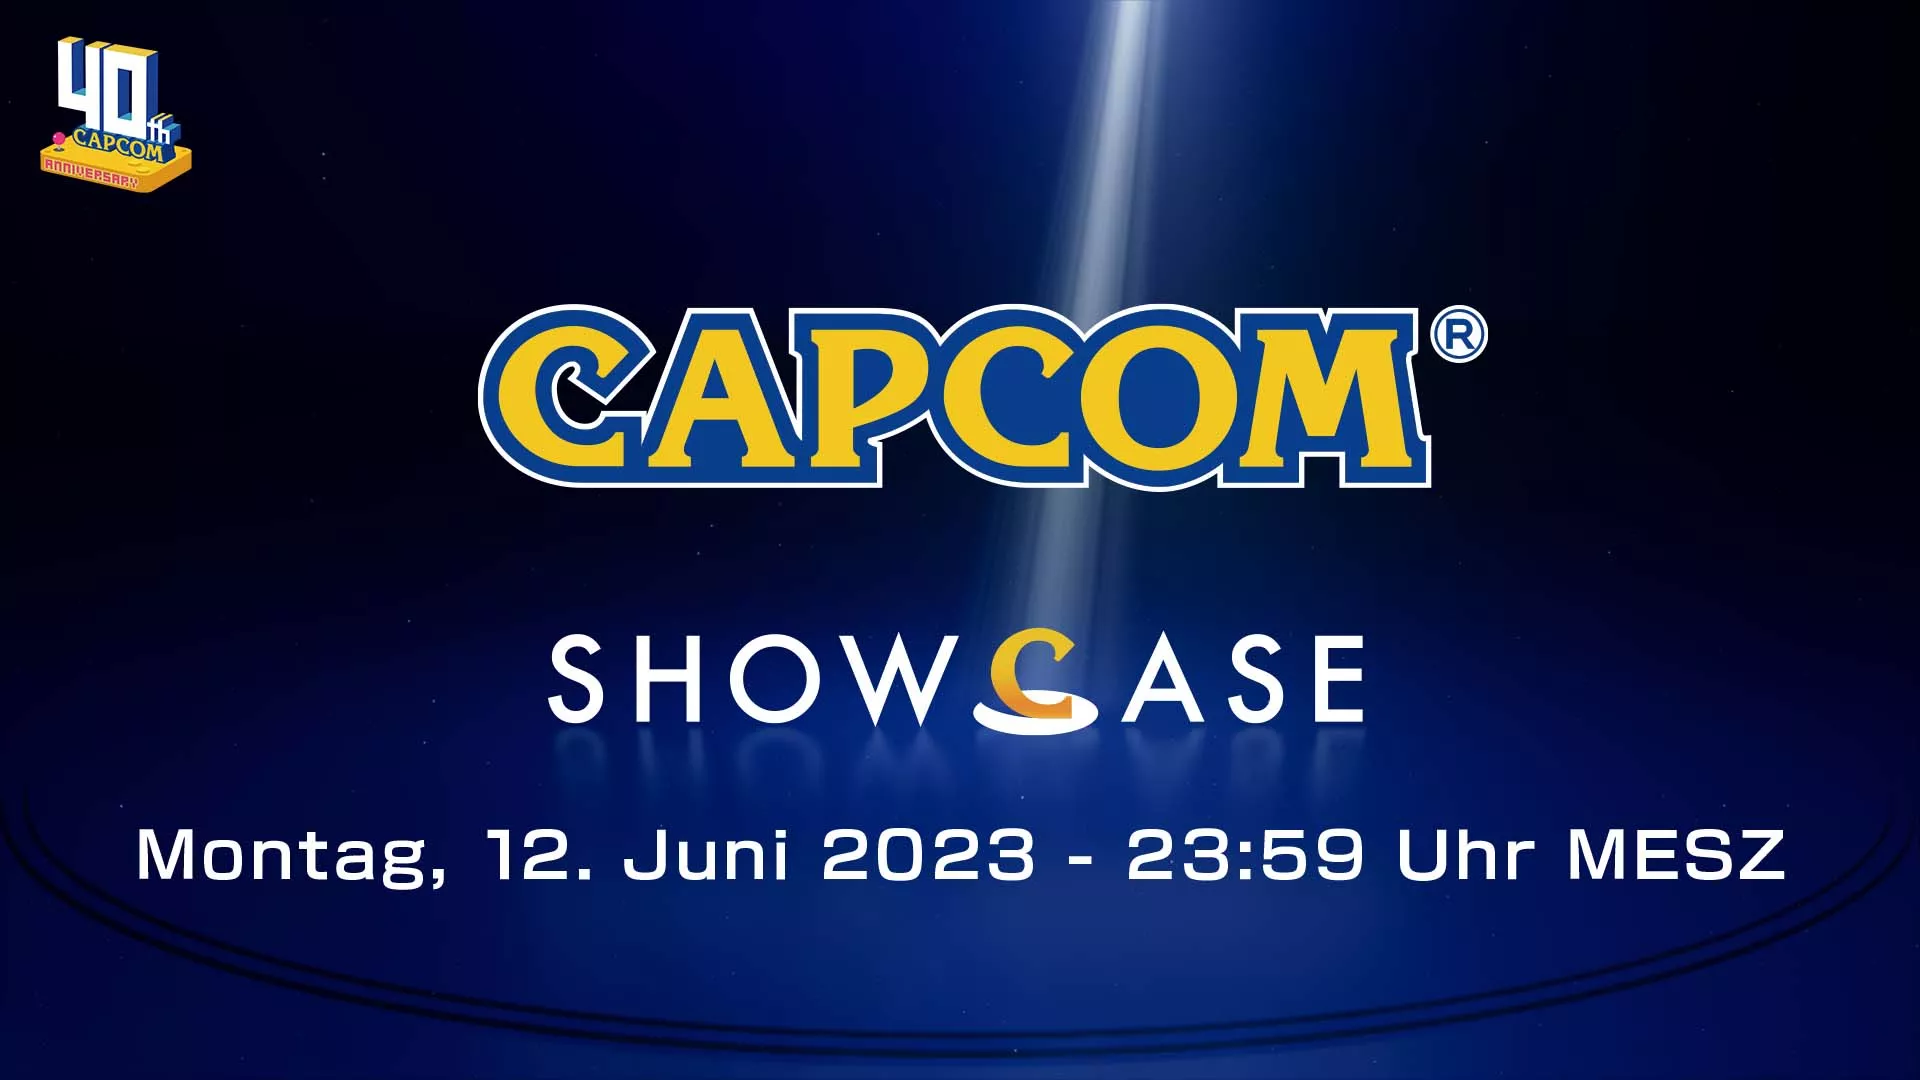 Capcom zeigen in der Nacht von Montag den 12. Juni auf Dienstag um Mitternacht die nächste Ausgabe ihres Showcases Heropic